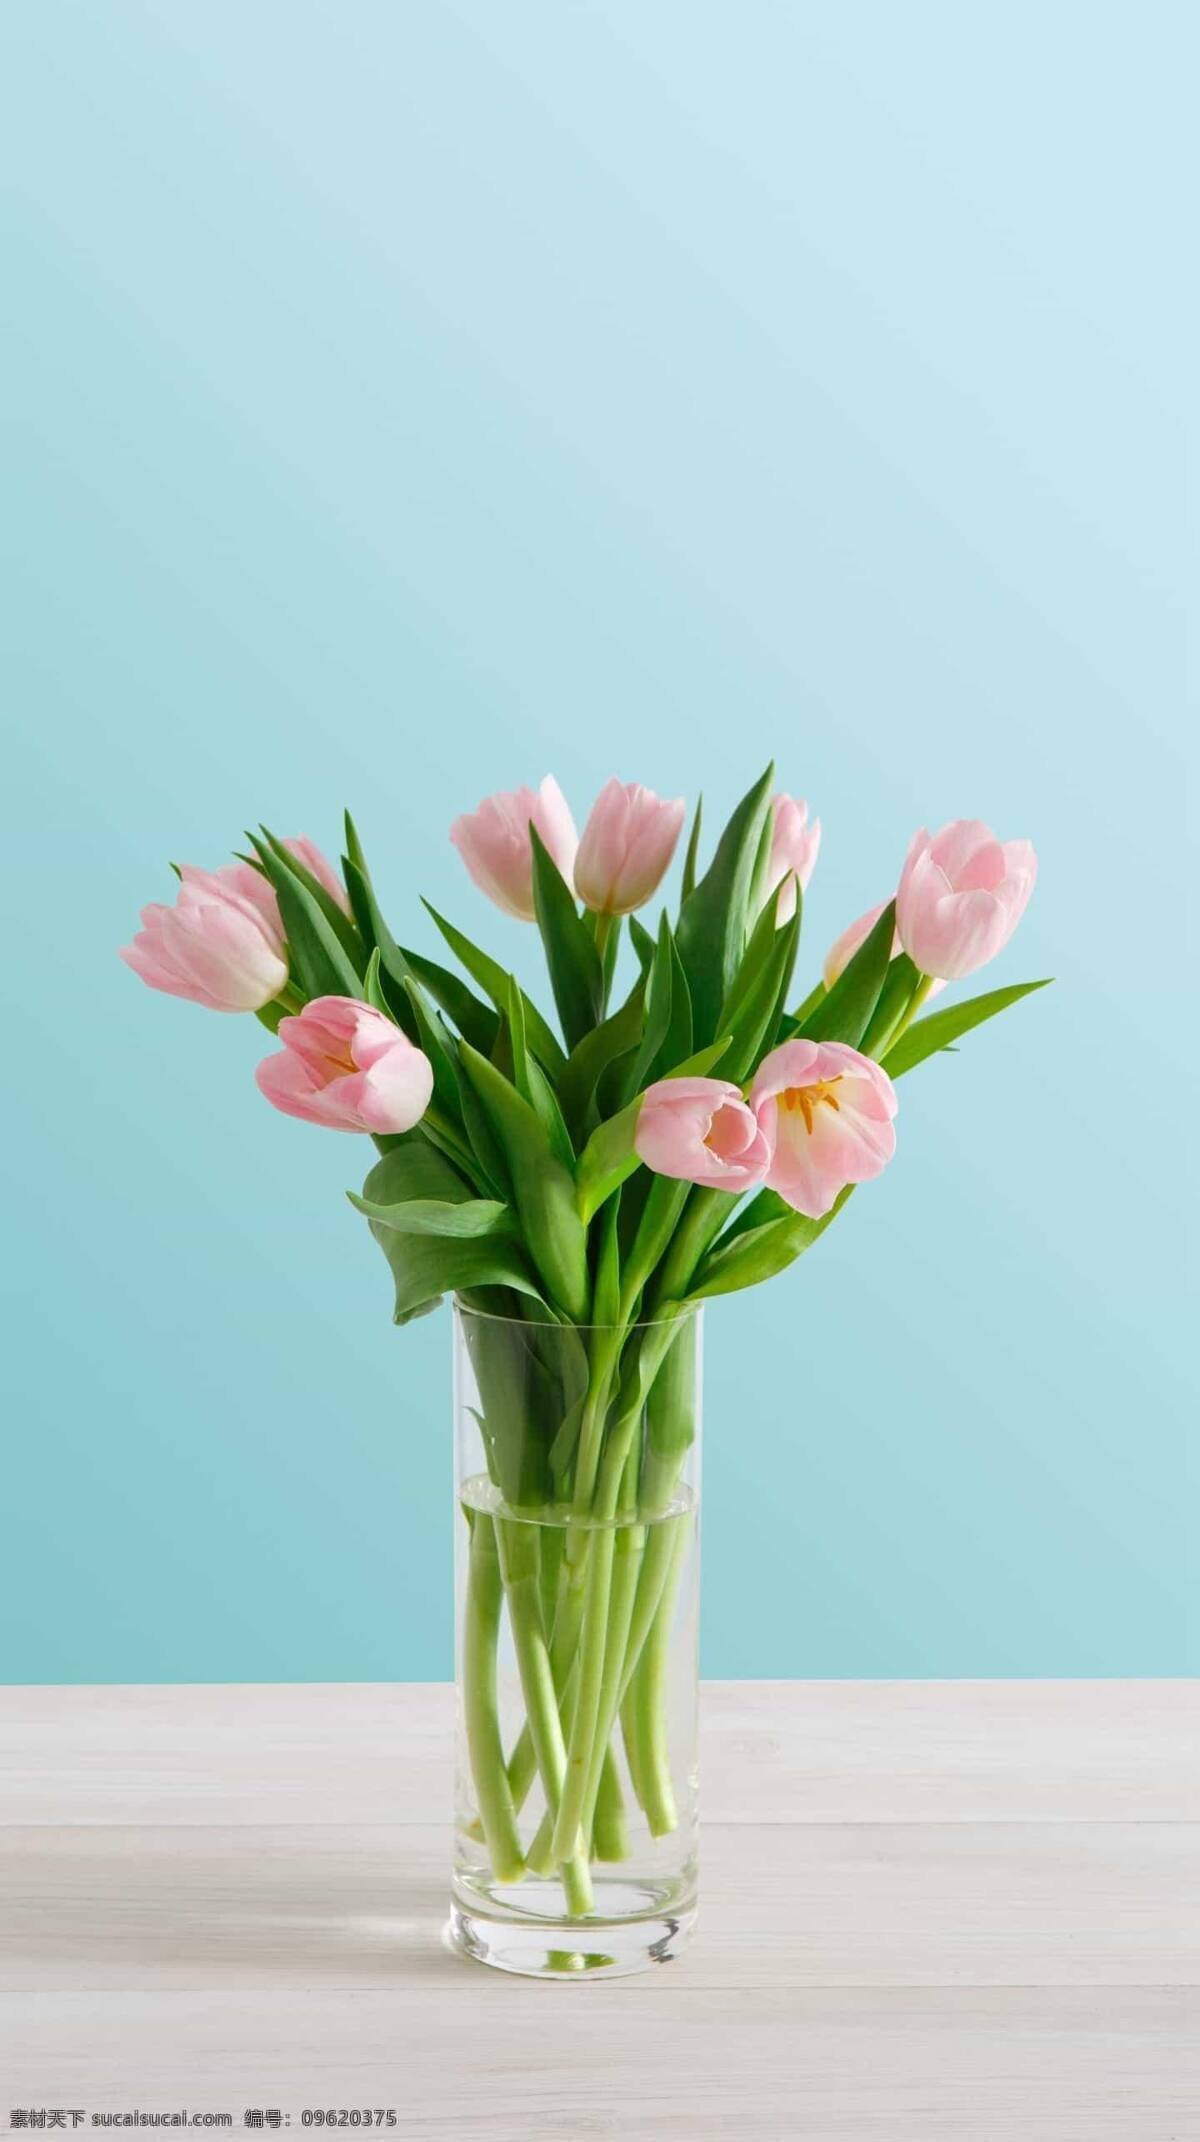 郁金香 植物 花 鲜花 绿叶 叶子 花瓶 粉嫩 清新 粉色 绿色 生机 装饰